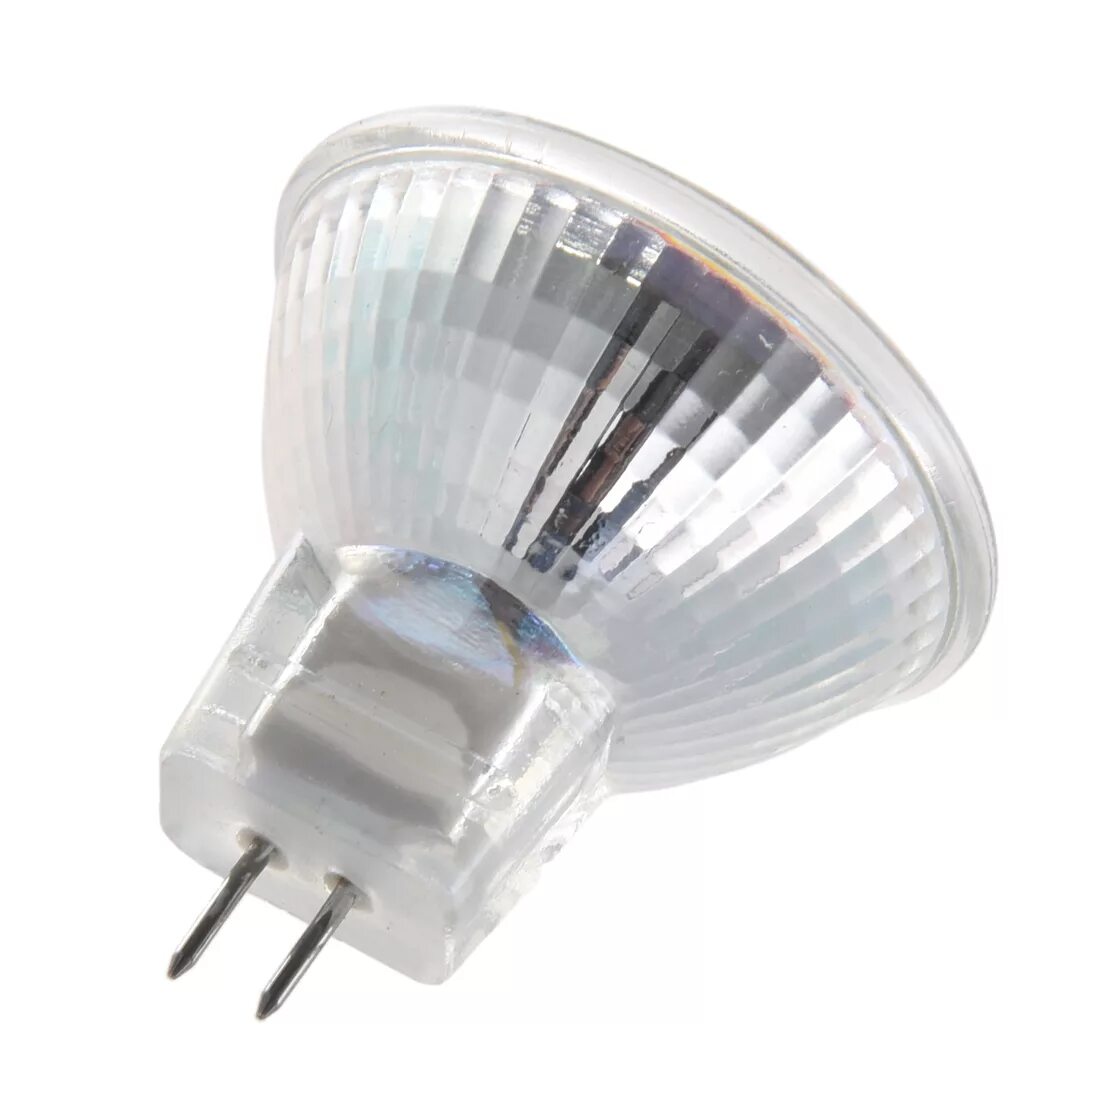 Лампа gu4 12v 10w mr11. Светодиодная лампа LEDCRAFT mr11 gu4. Лампа led mr11 4w gu4 10-30v. Mr 11 лампочки светодиодные 12v.